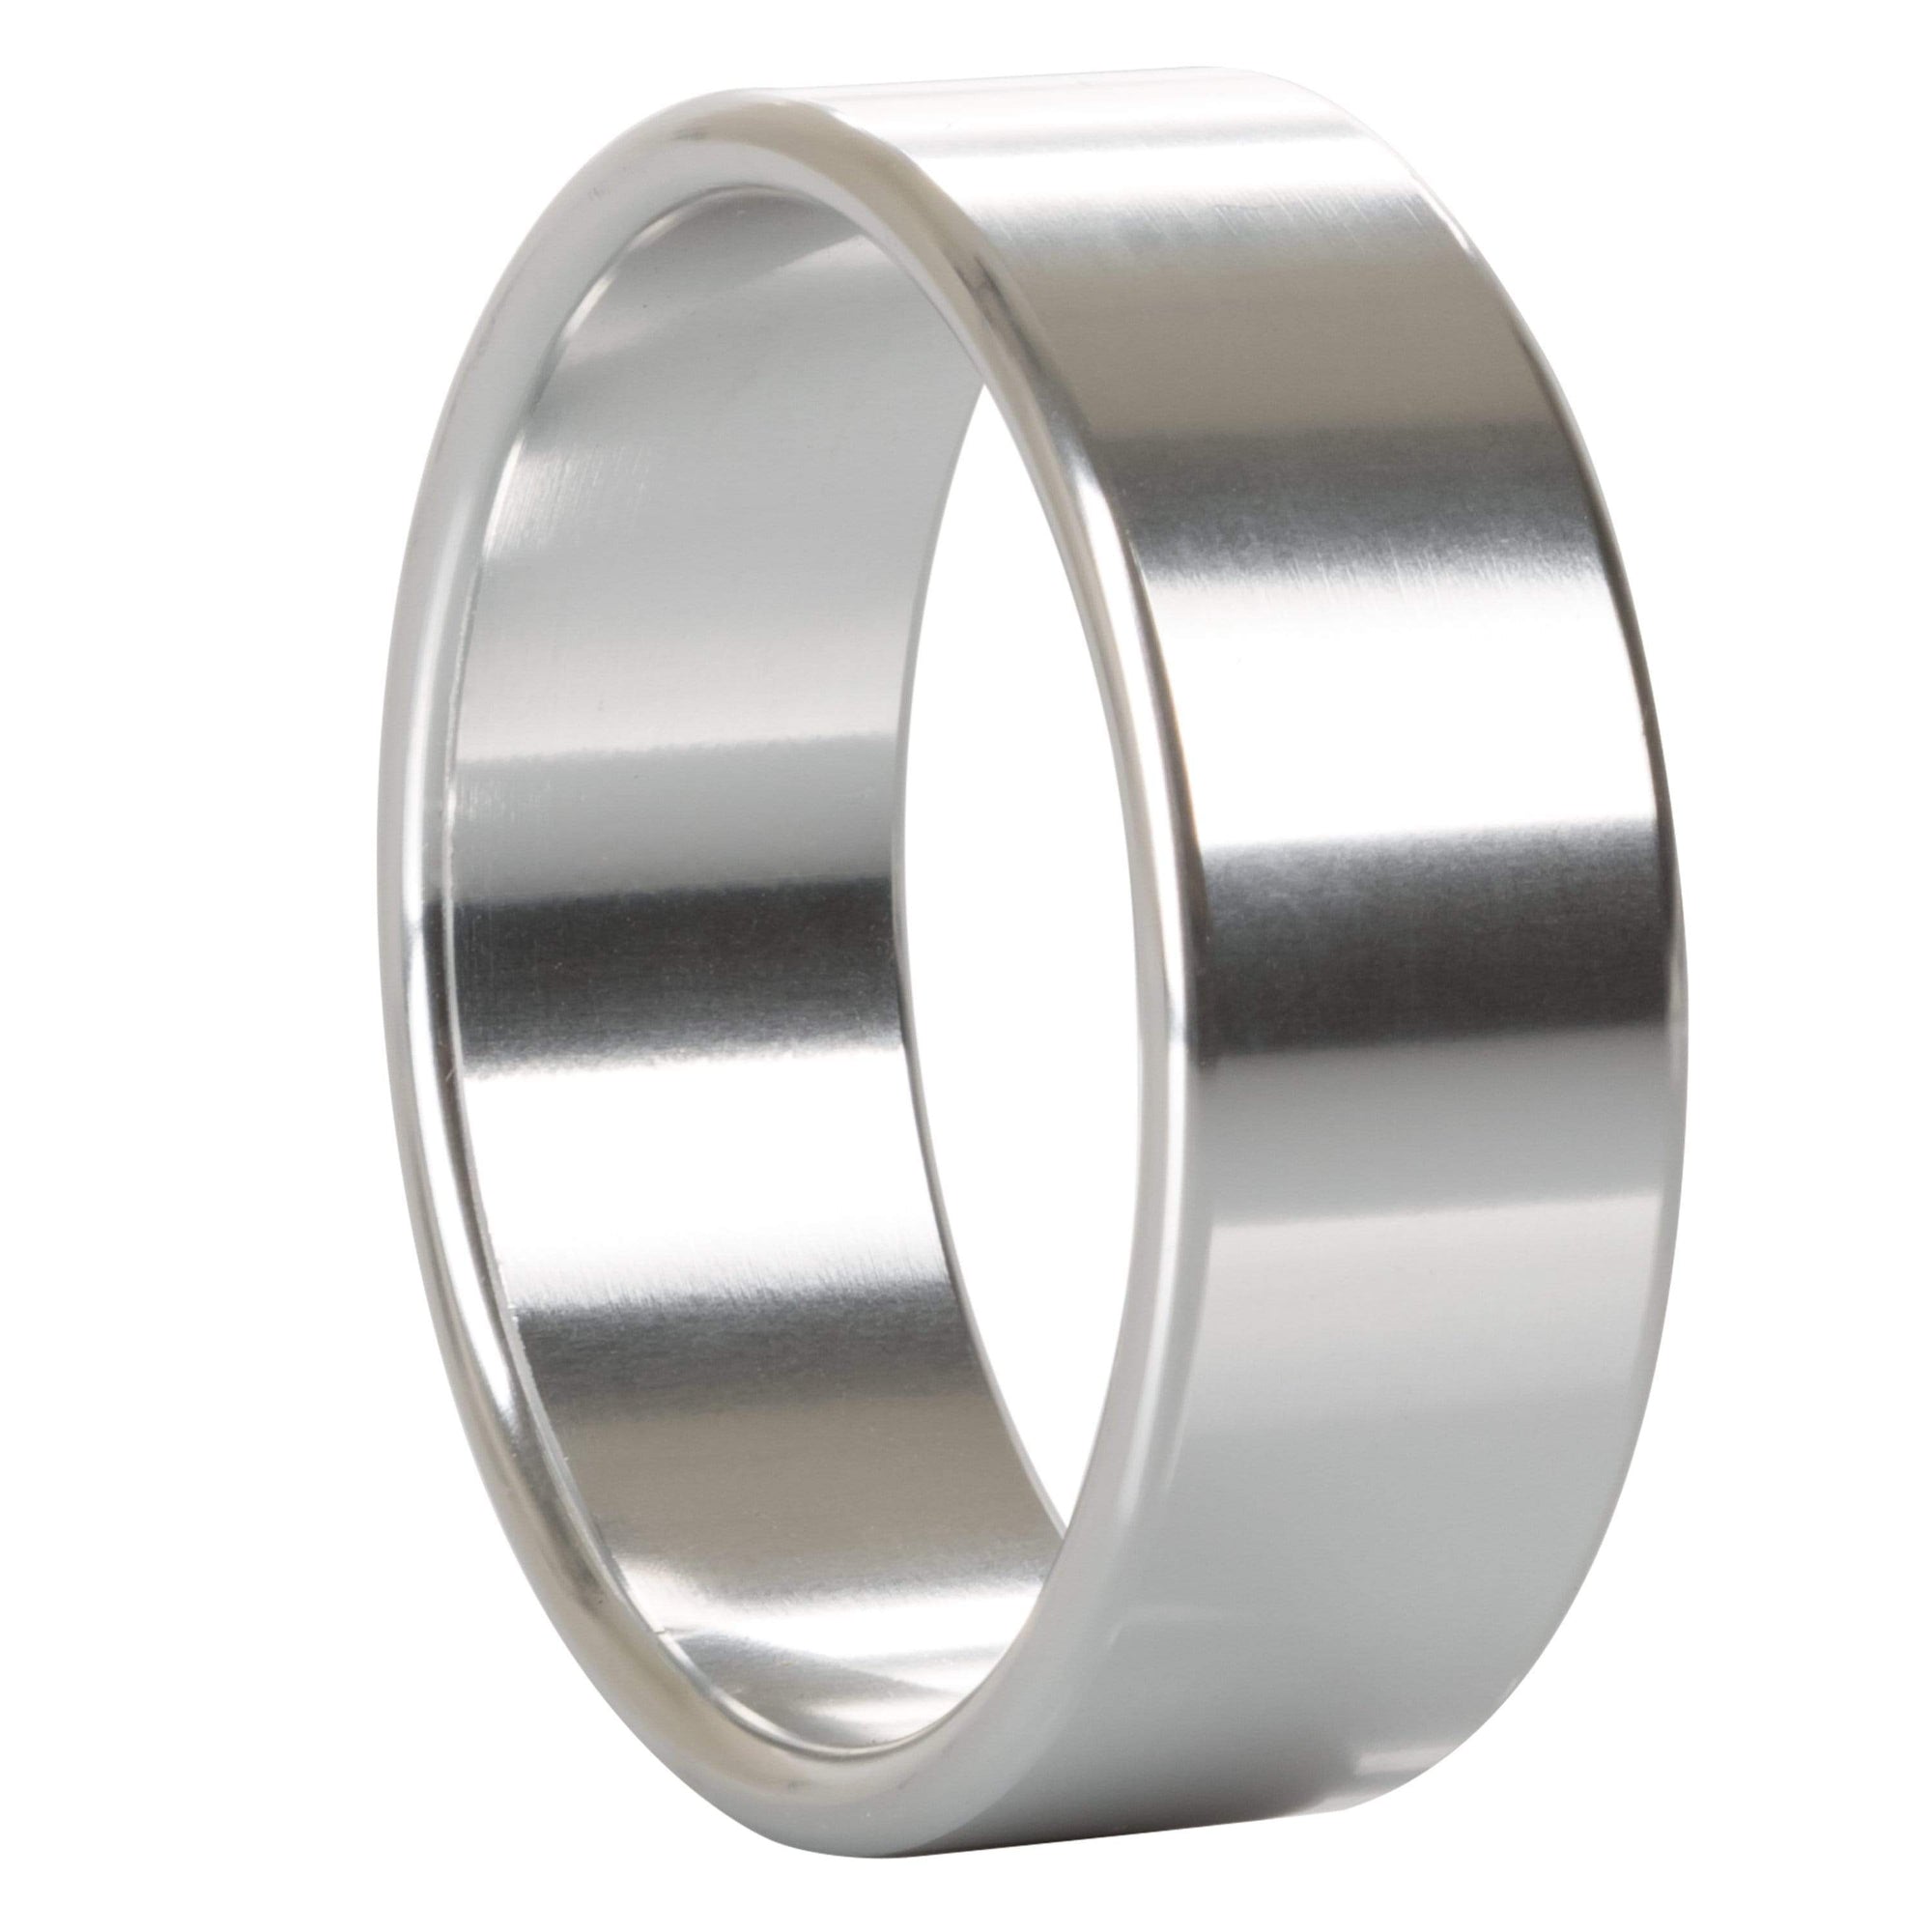 California Exotics - Alloy Metallic Cock Ring Extra Large (Silver) -  Metal Cock Ring (Non Vibration)  Durio.sg